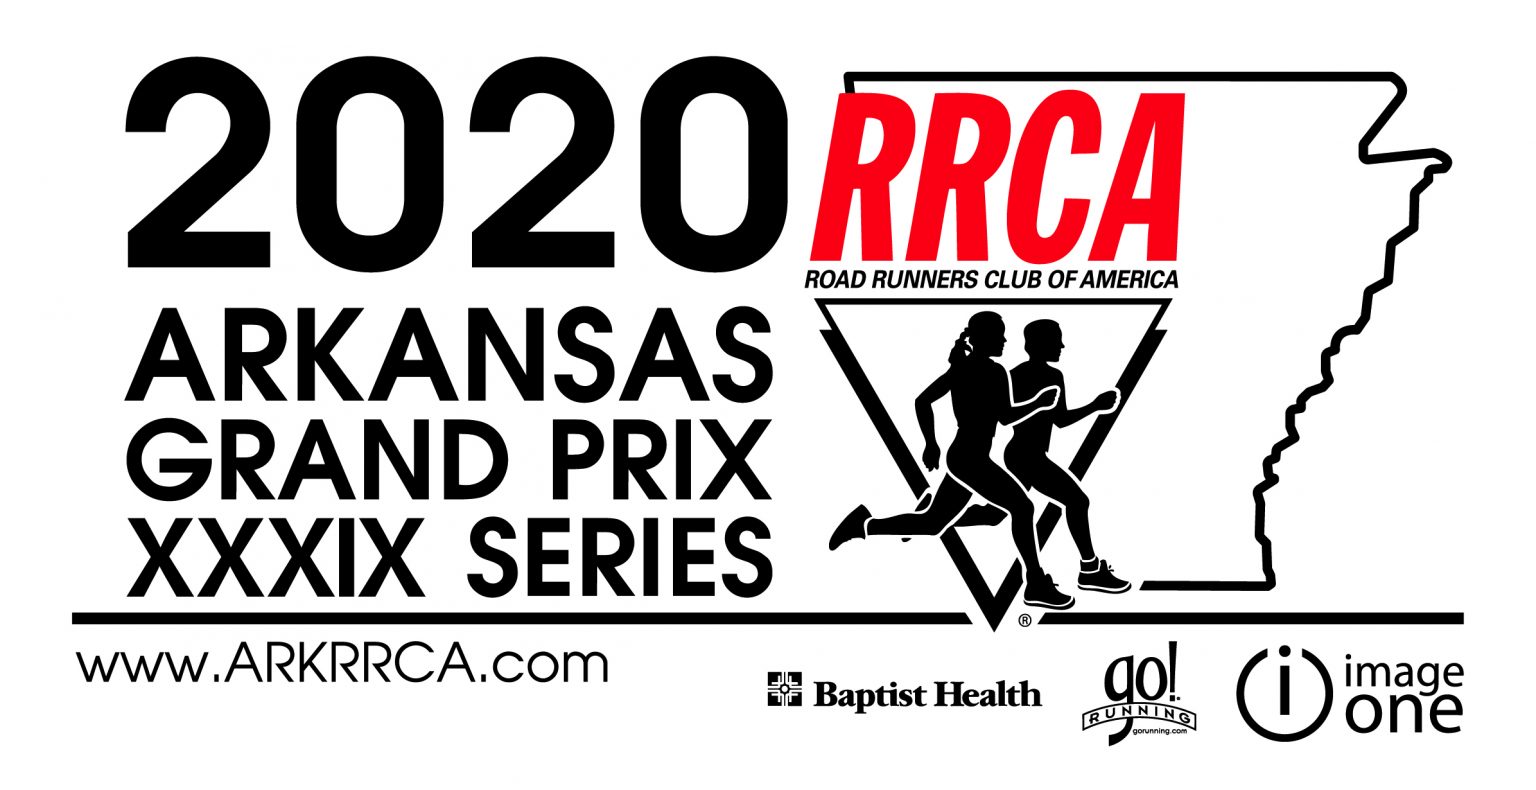 2021 Grand Prix Arkansas RRCA and Grand Prix